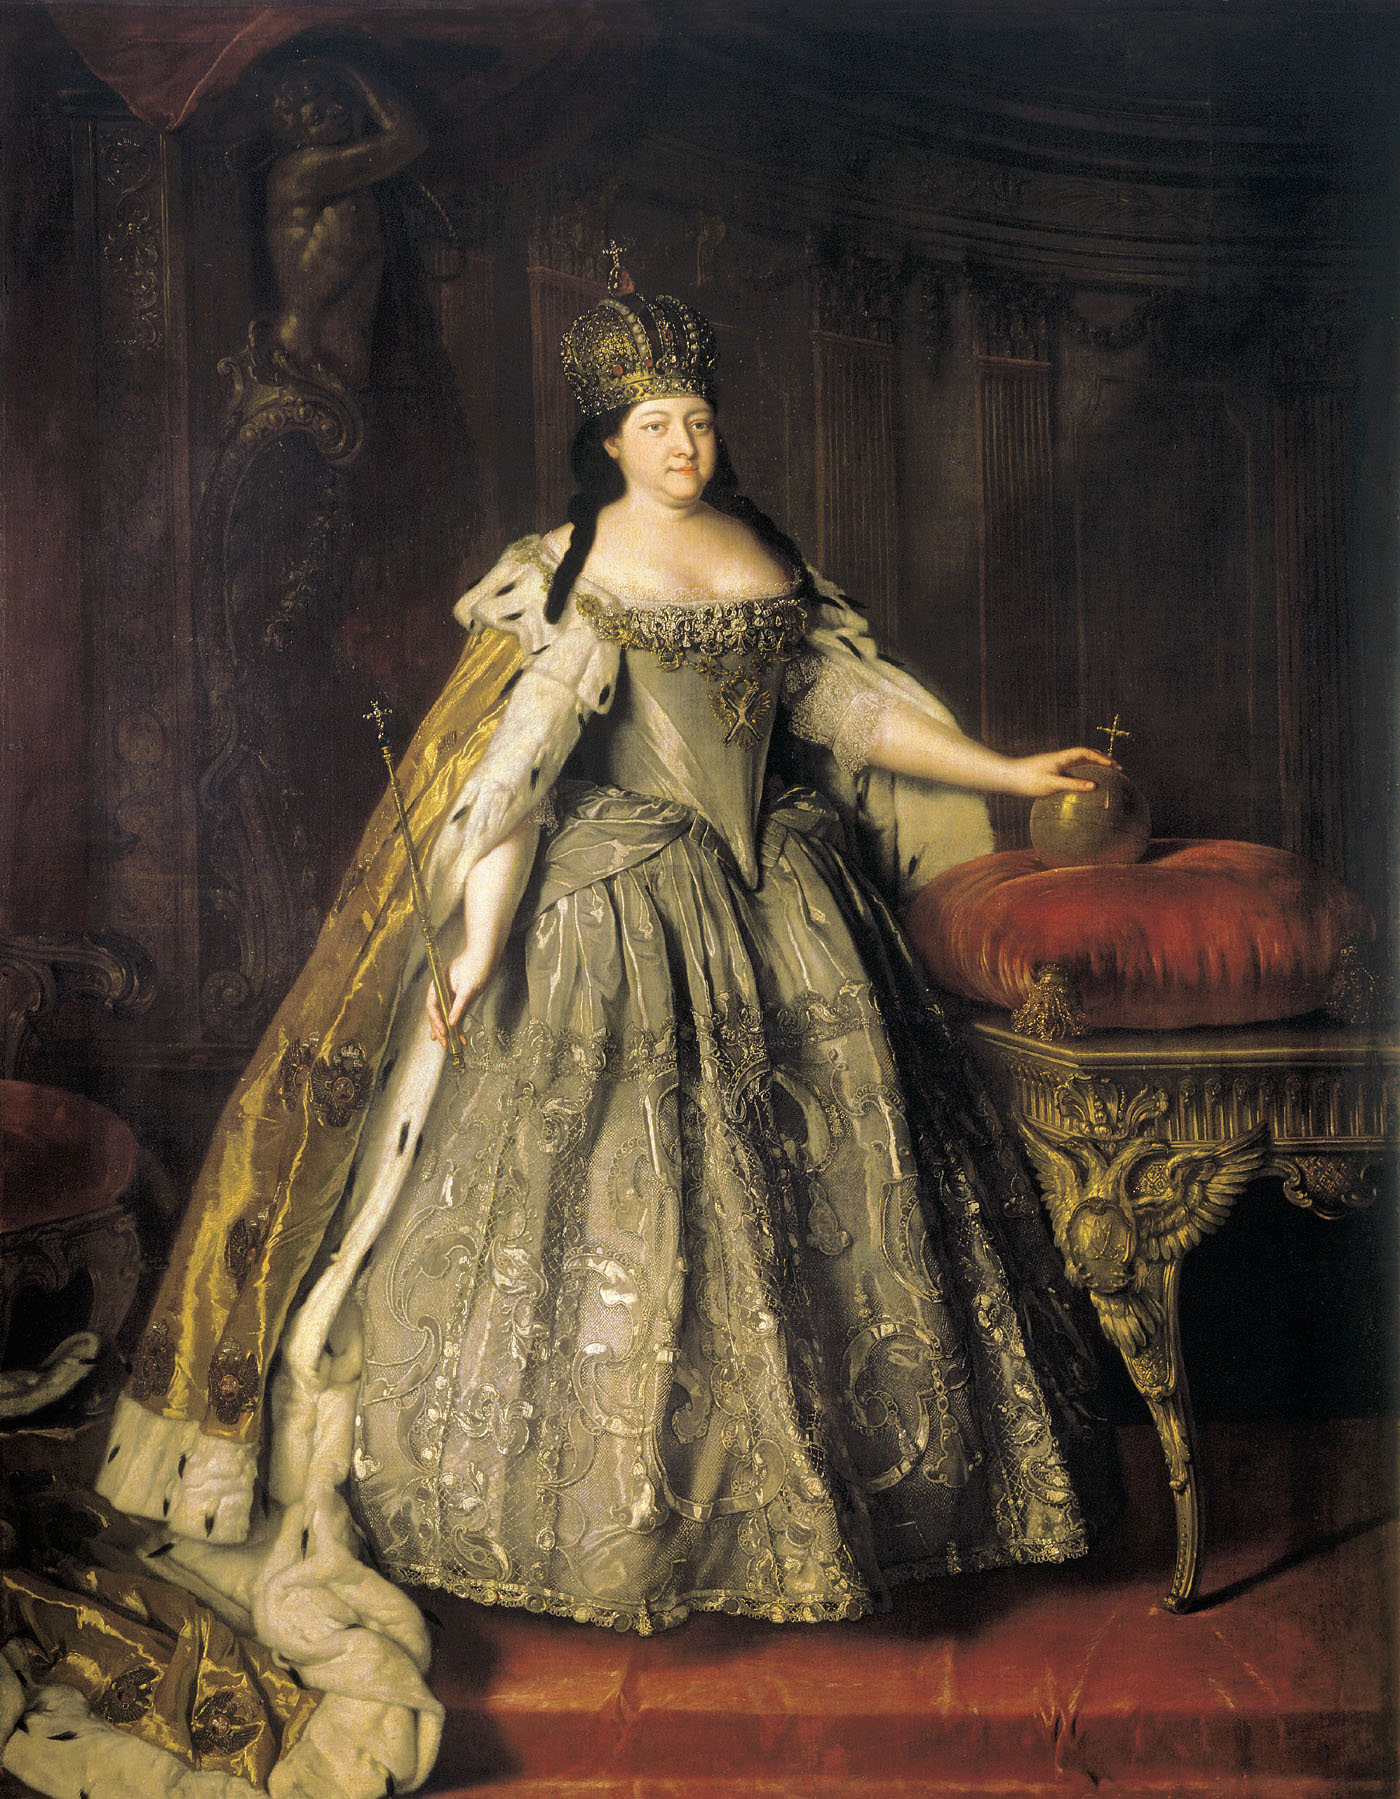 Луи Каравакк. Портрет императрицы Анны Иоанновны. 1730.